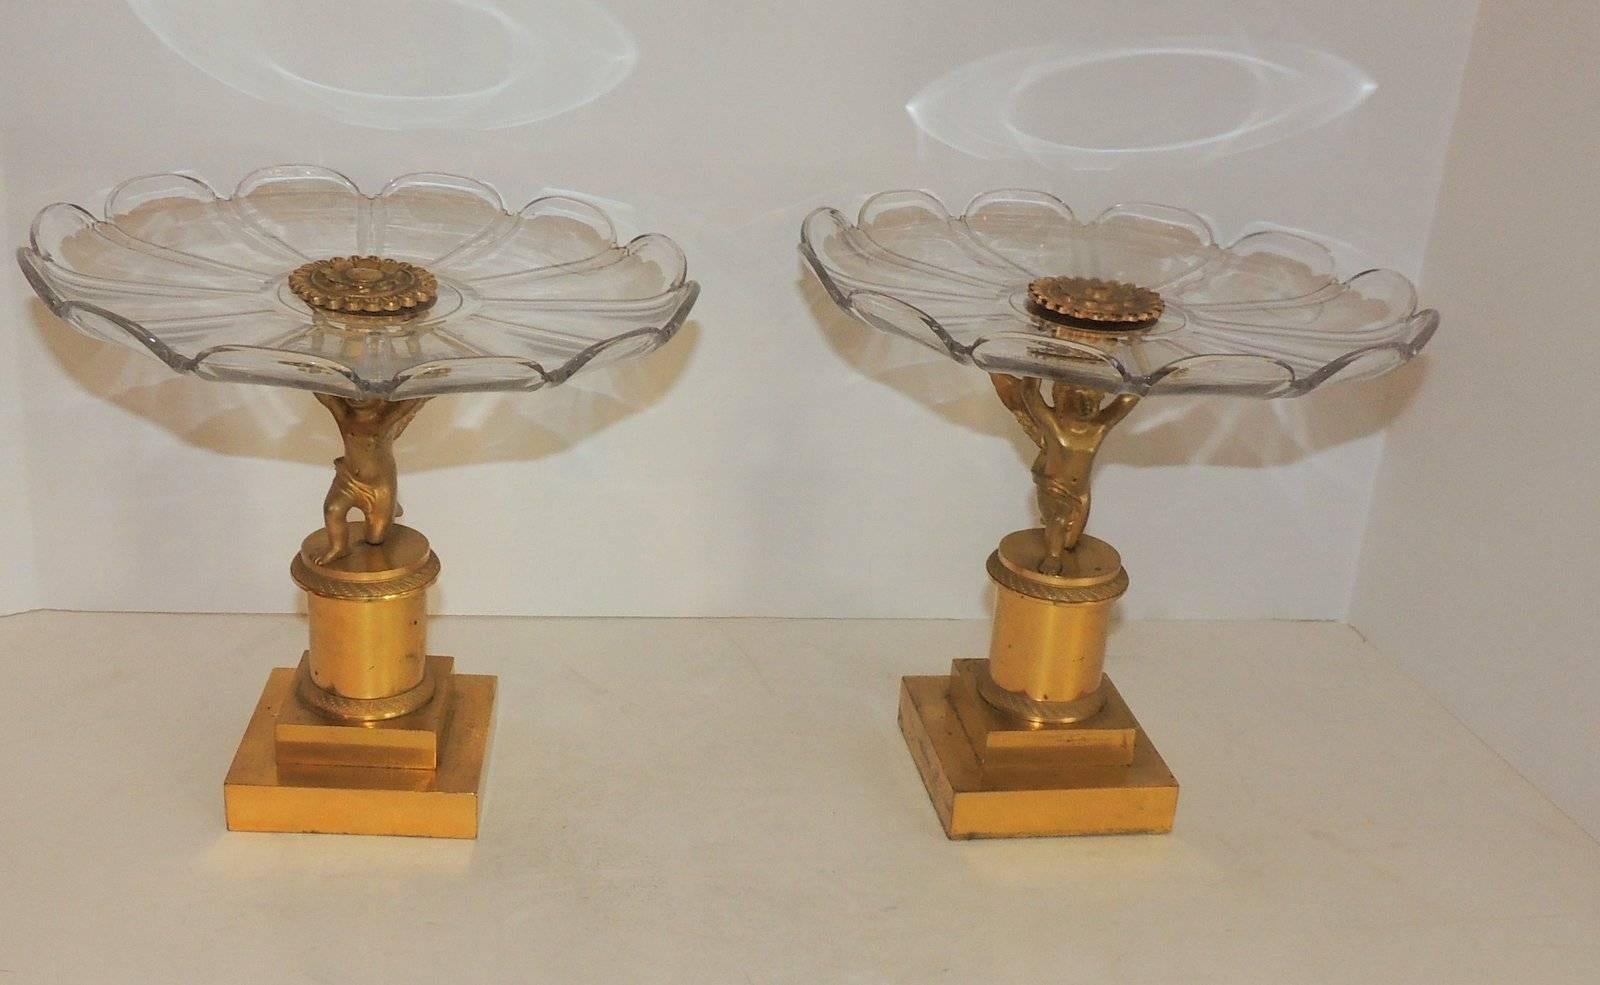 Wunderschönes Paar Kristallkompott, gehalten von geflügelten Putten aus vergoldeter Bronze auf geätzten Sockeln.

Maße: 9